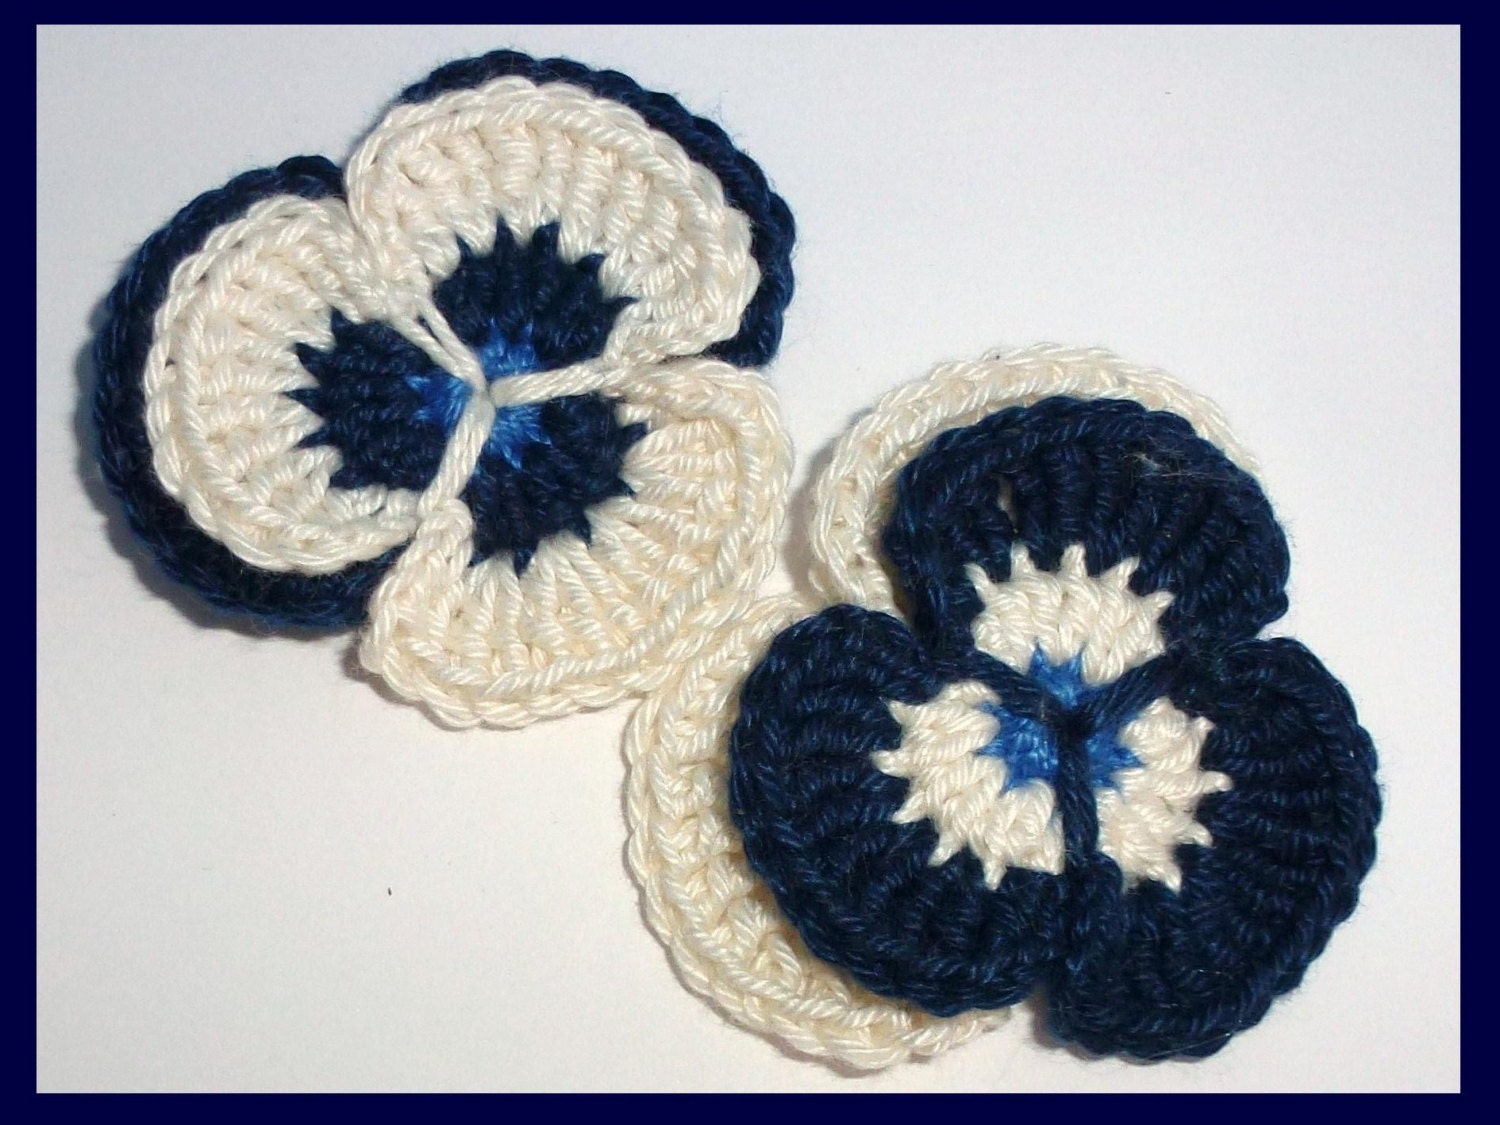 Crochet applique, 2 crochet pansies, cards, scrapbooks, appliques and embellishments